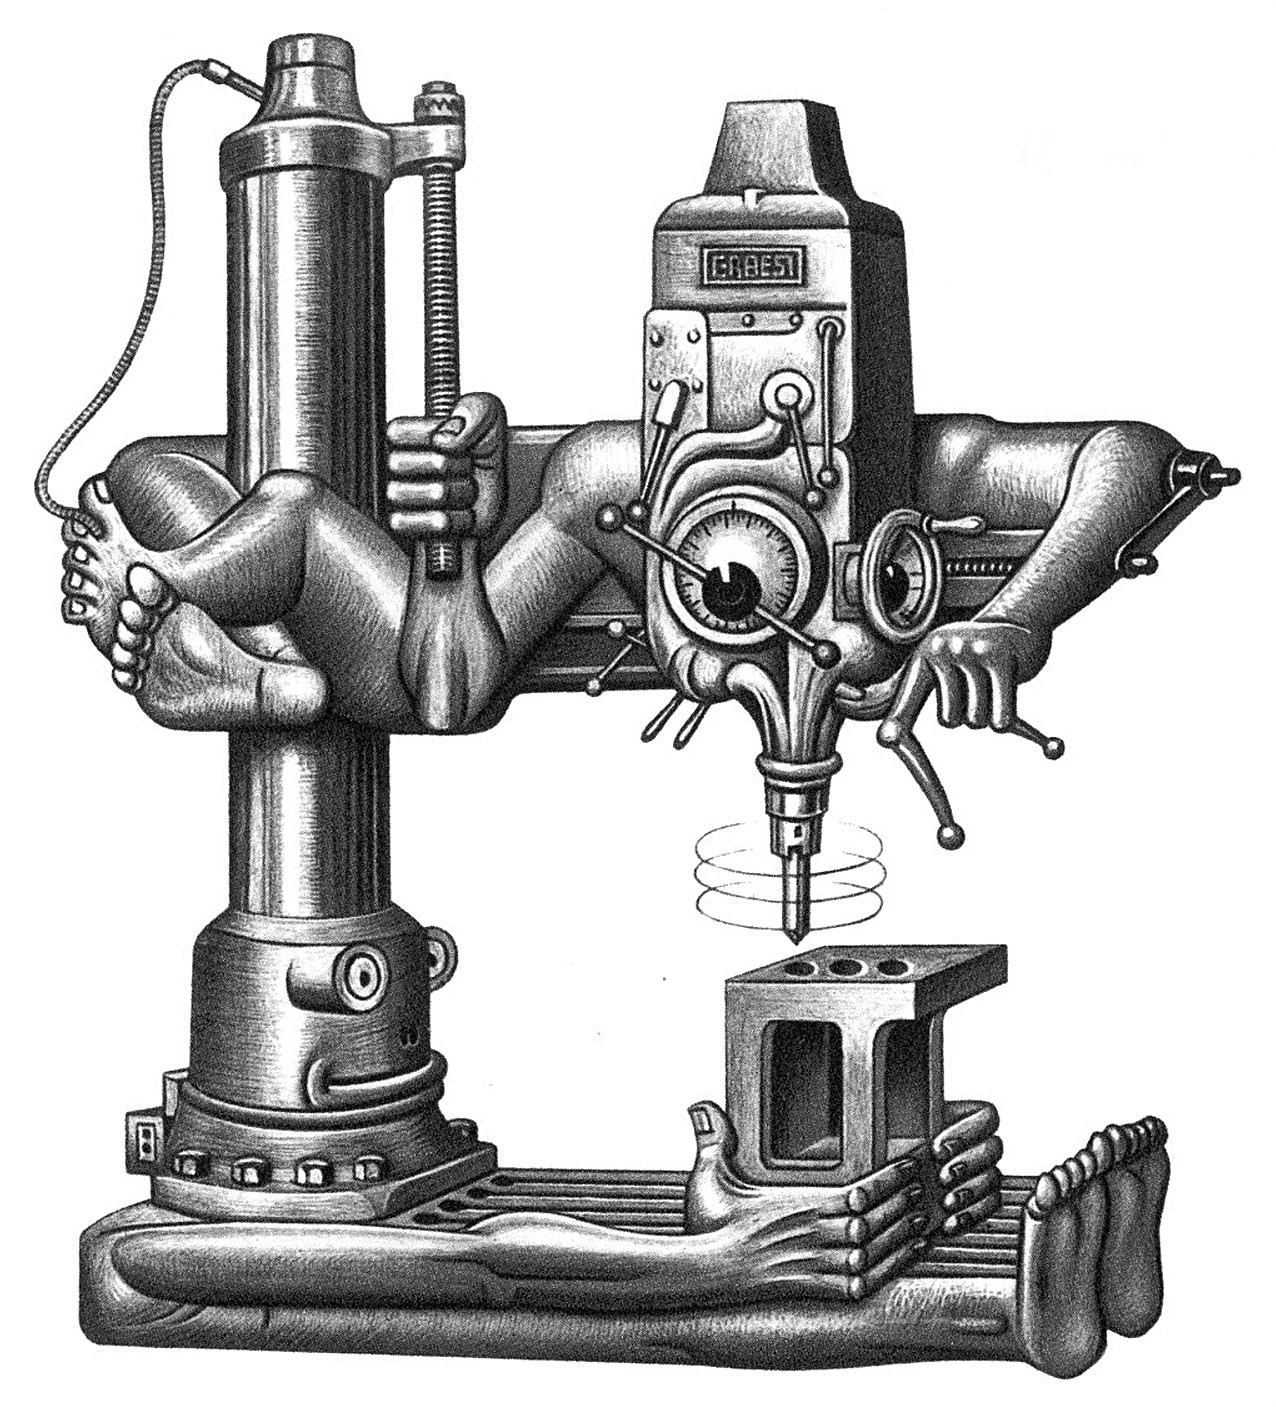 1954 ... radial drill - Artzybasheff